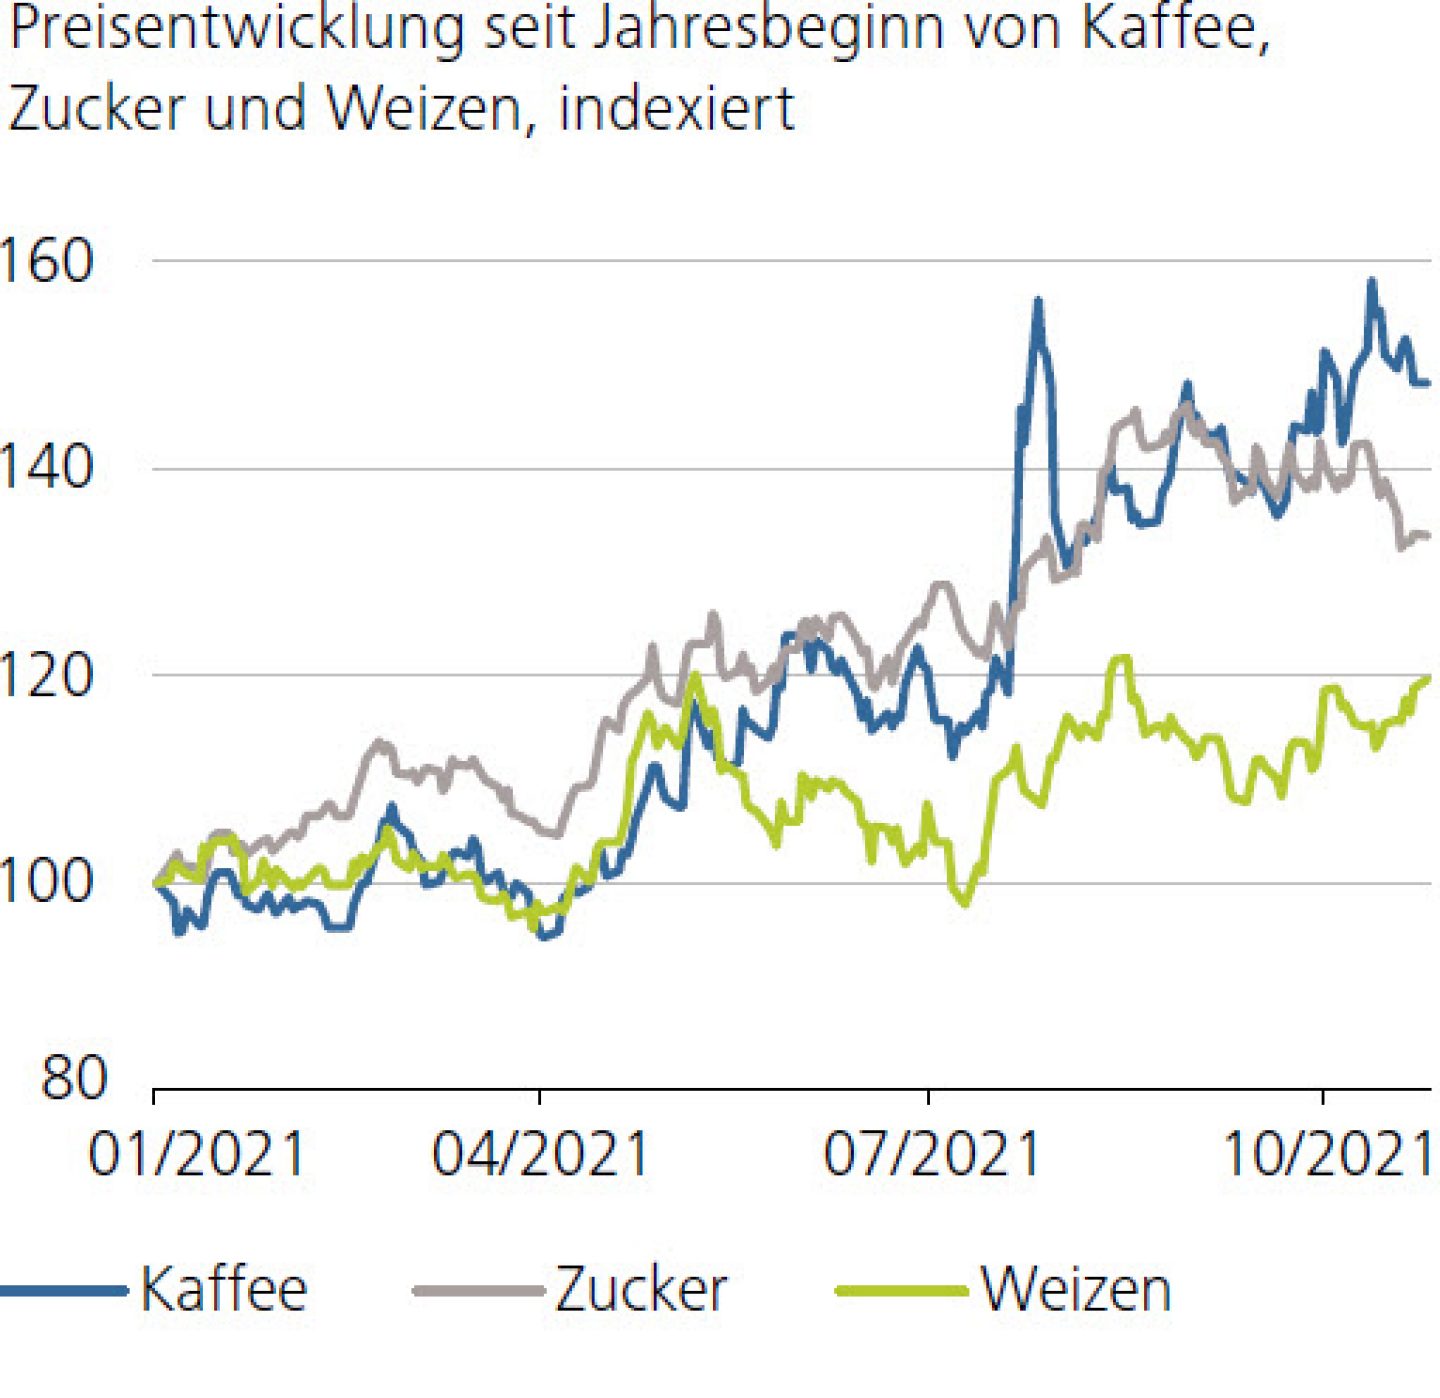 Preisentwicklung seit Jahresbeginn von Kaffee, Zucker und Weizen, indexiert 